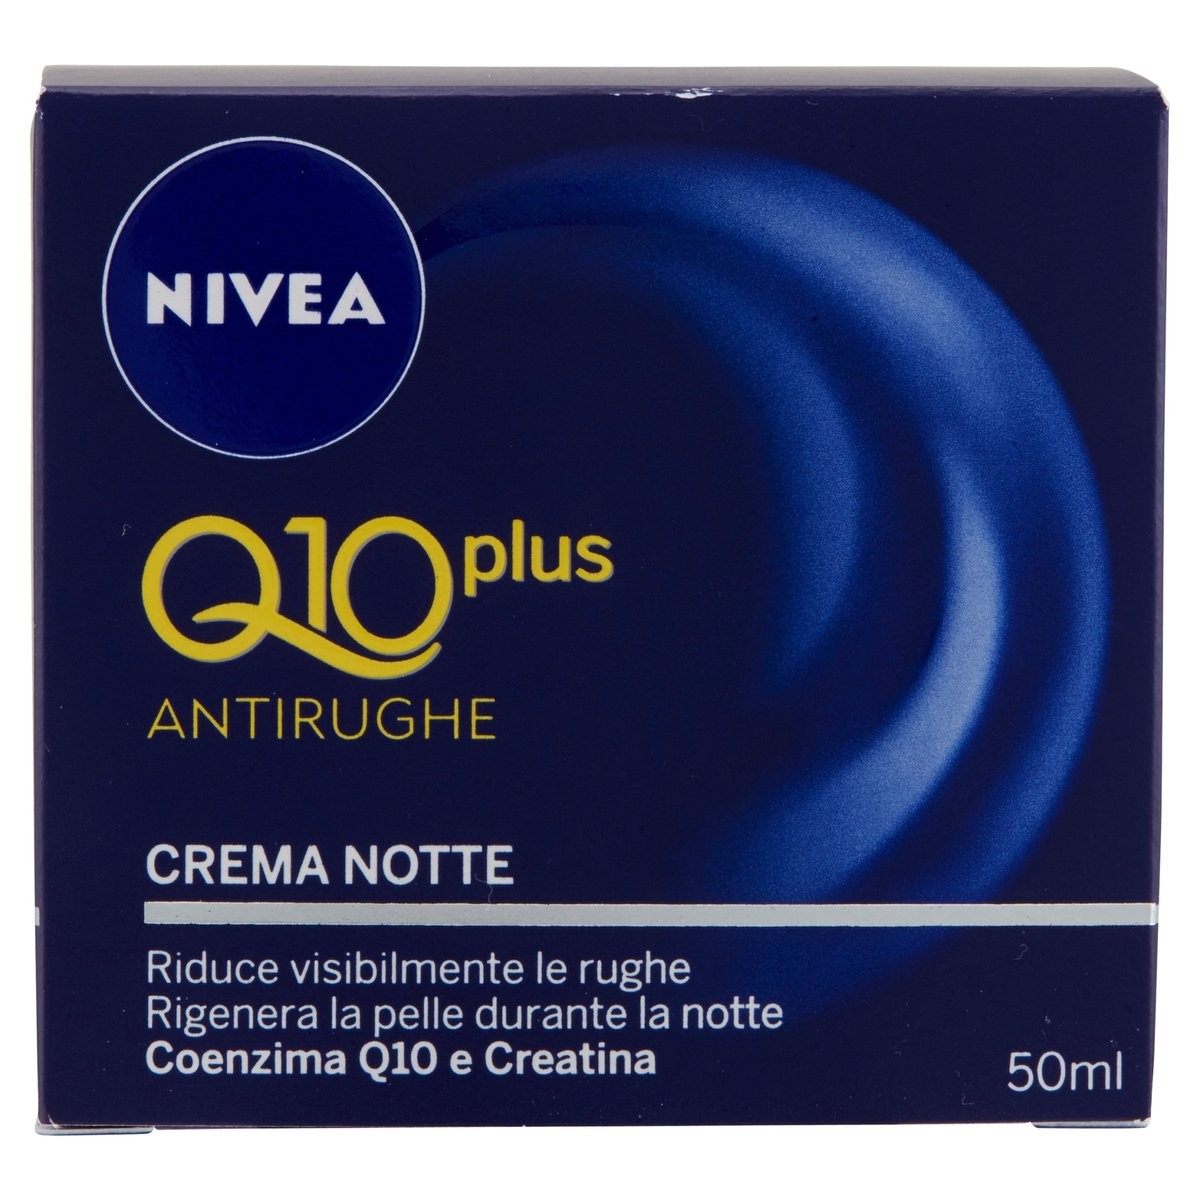 Nivea Q10 plus Crema notte antirughe